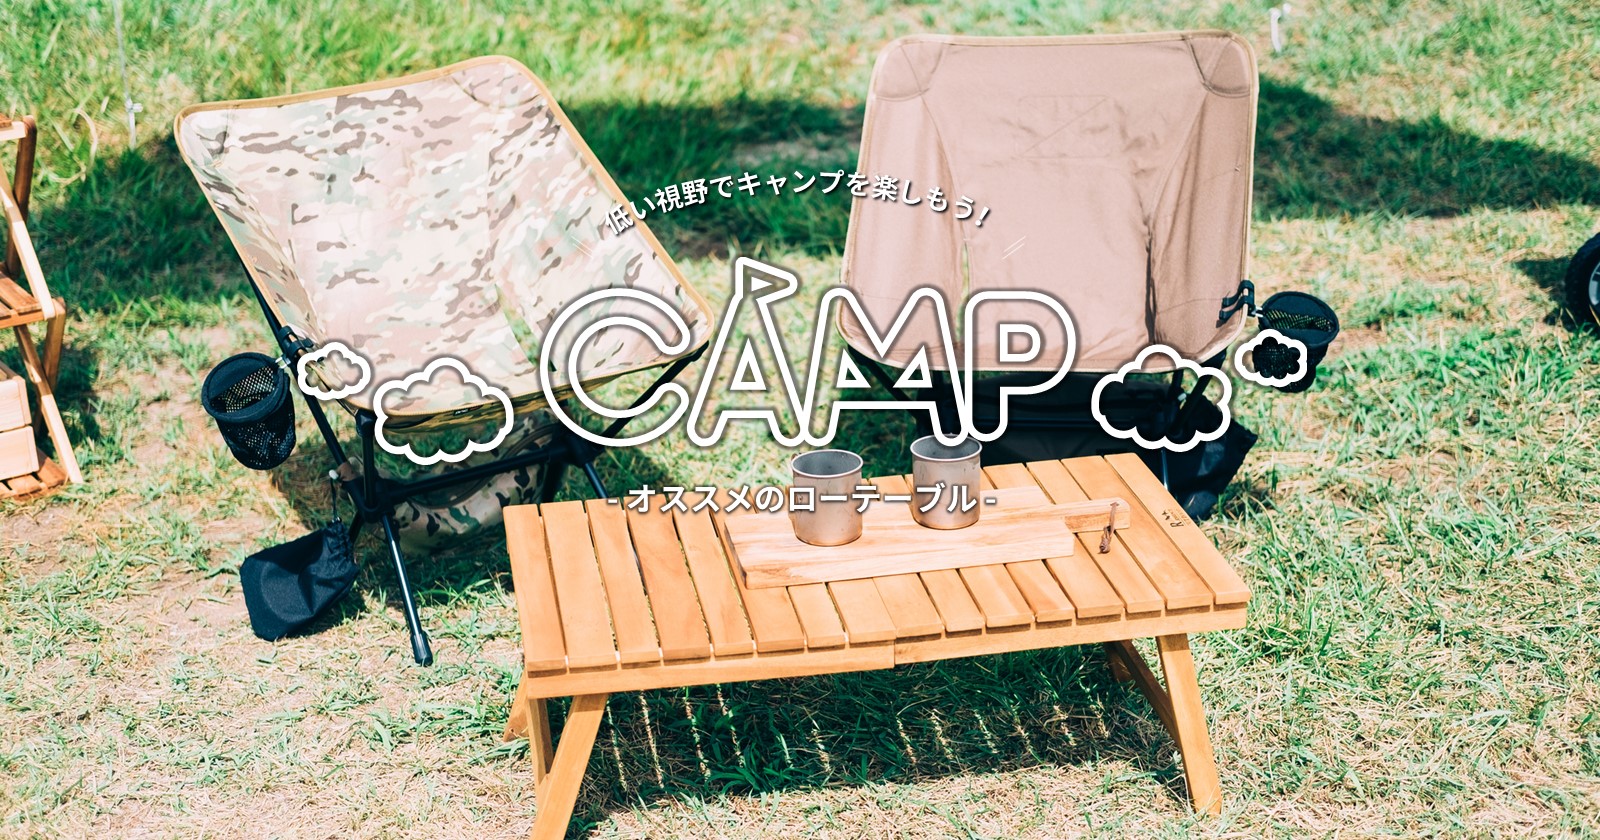 低い視野でキャンプを楽しもう オススメのローテーブル Takibi タキビ キャンプ アウトドアの総合情報サイト